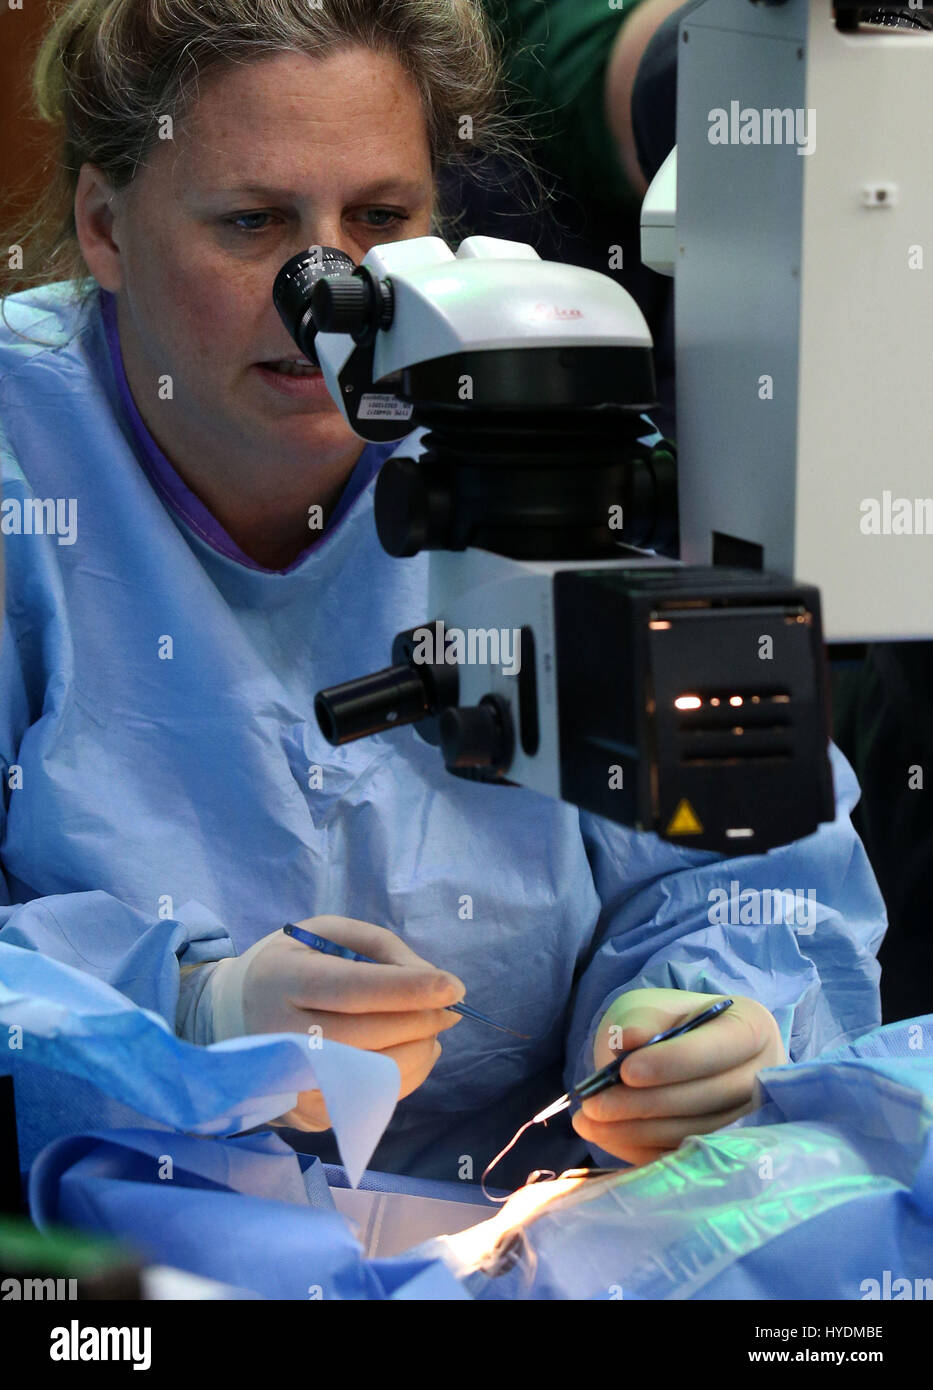 Augenärztin Claudia Hartley während einer Operation zur Linsenabsauung am rechten Auge von Bella, dem kalifornischen Seelöwen. Foto vom 27/02/17 Stockfoto